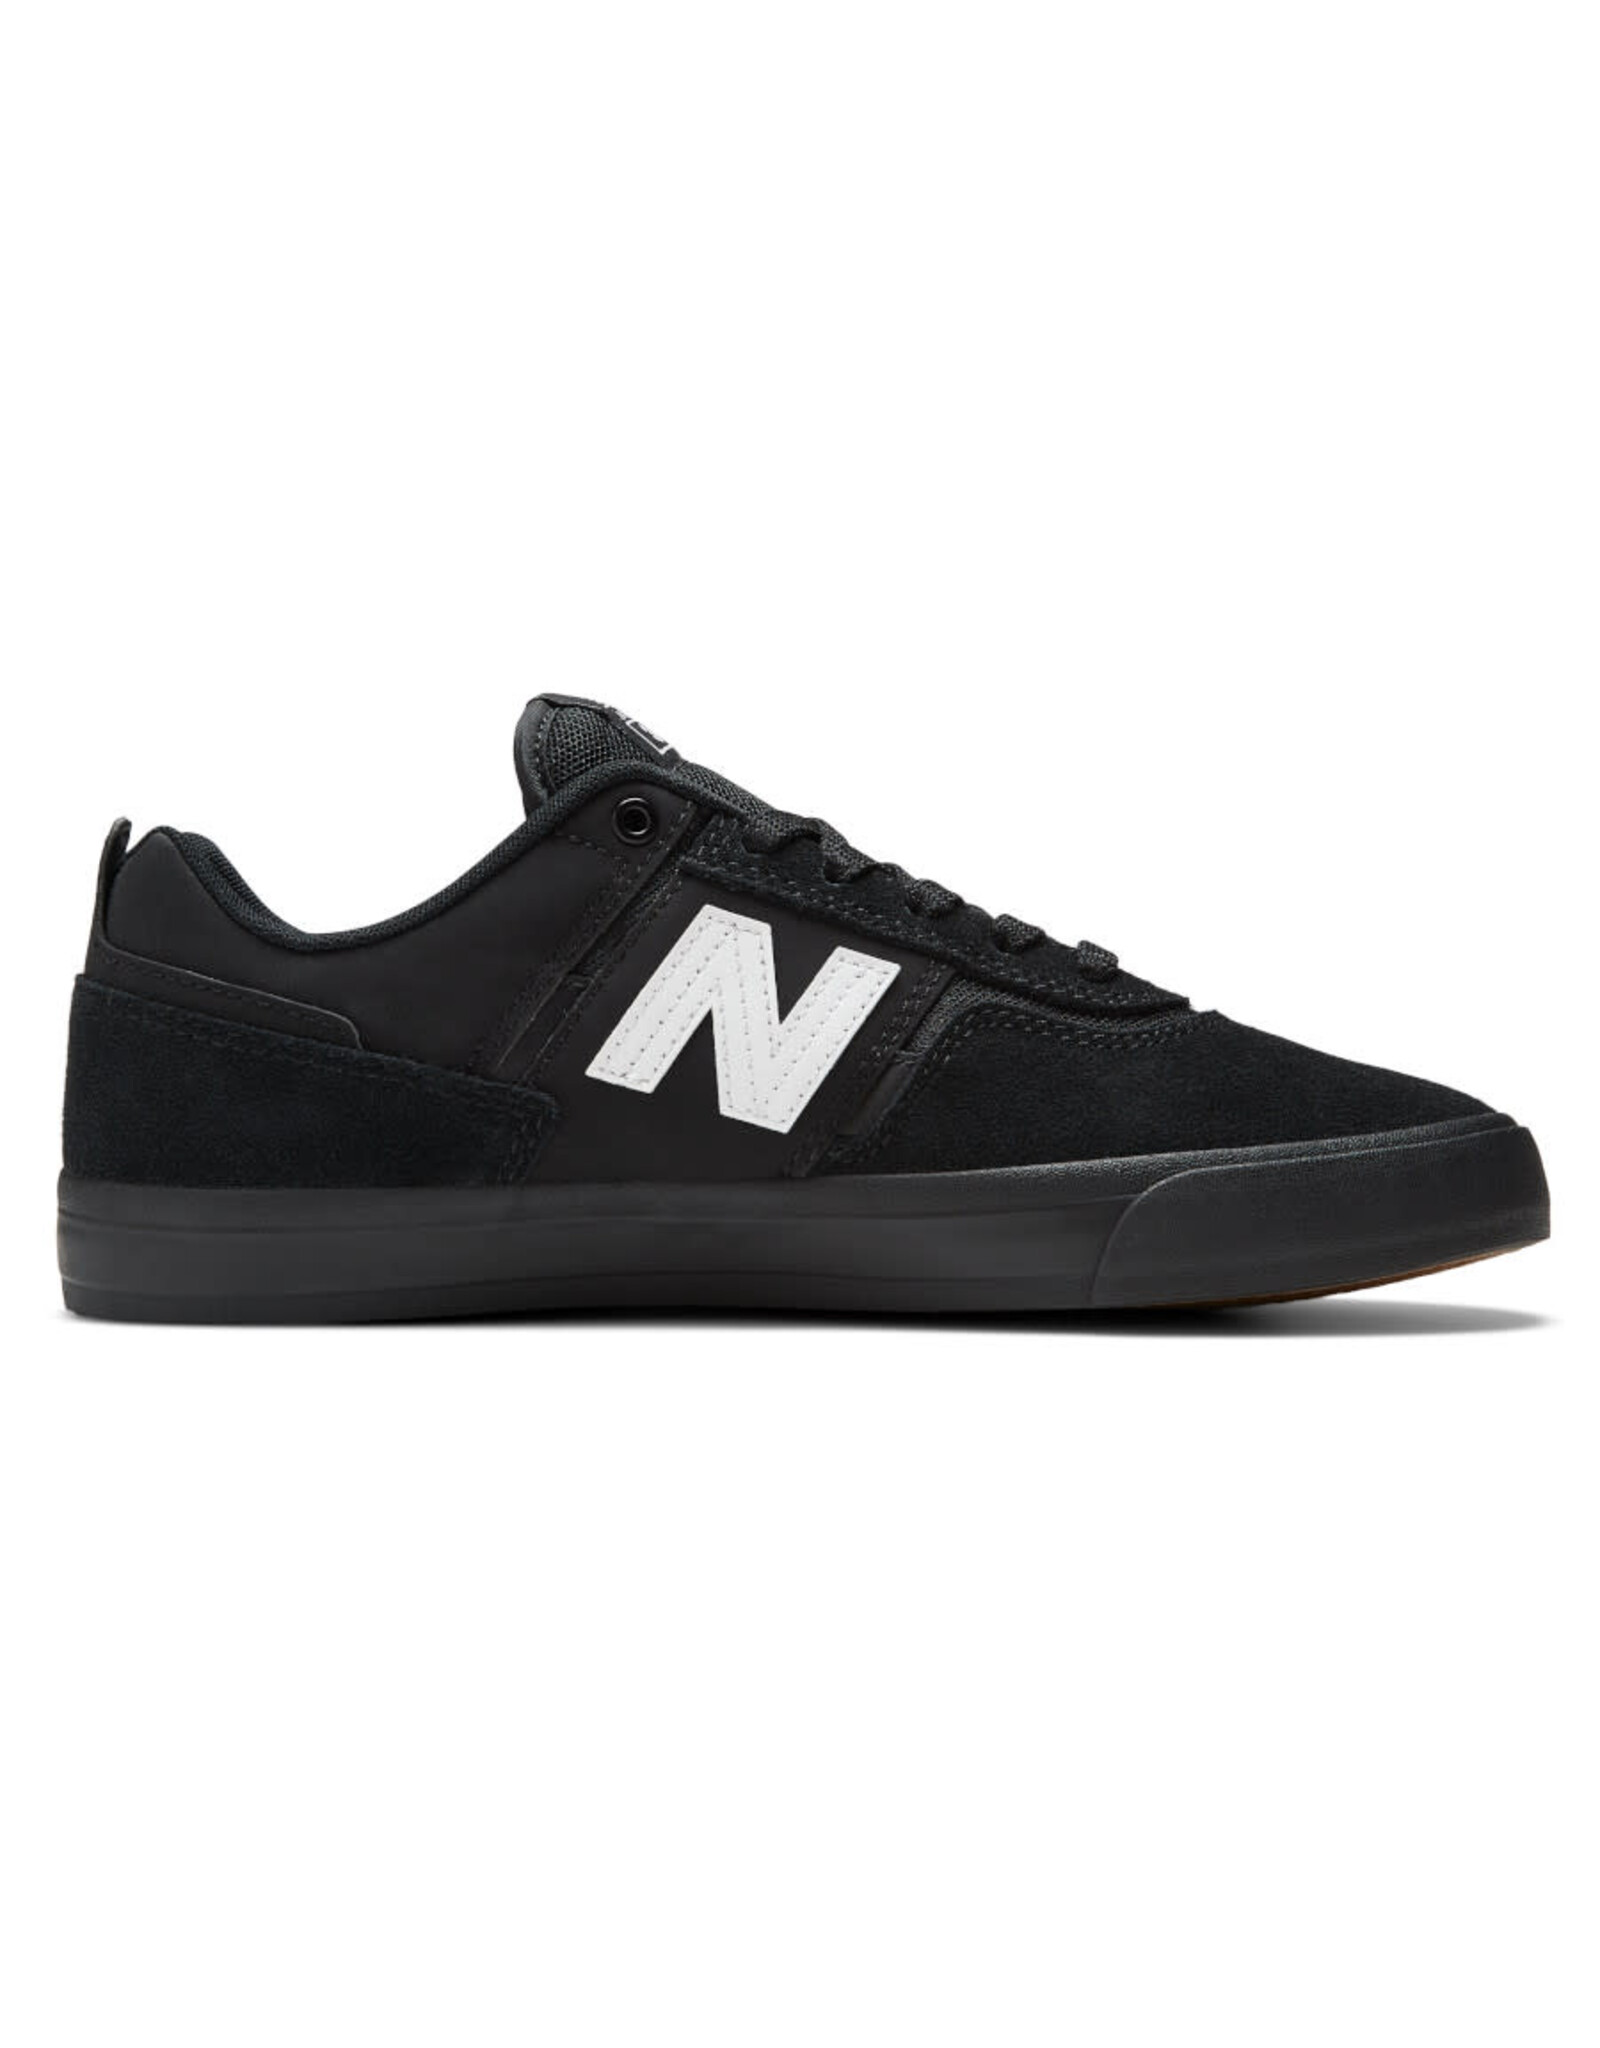 New Balance Numeric New Balance Numeric Shoe 306 Jamie Foy (Black/White)